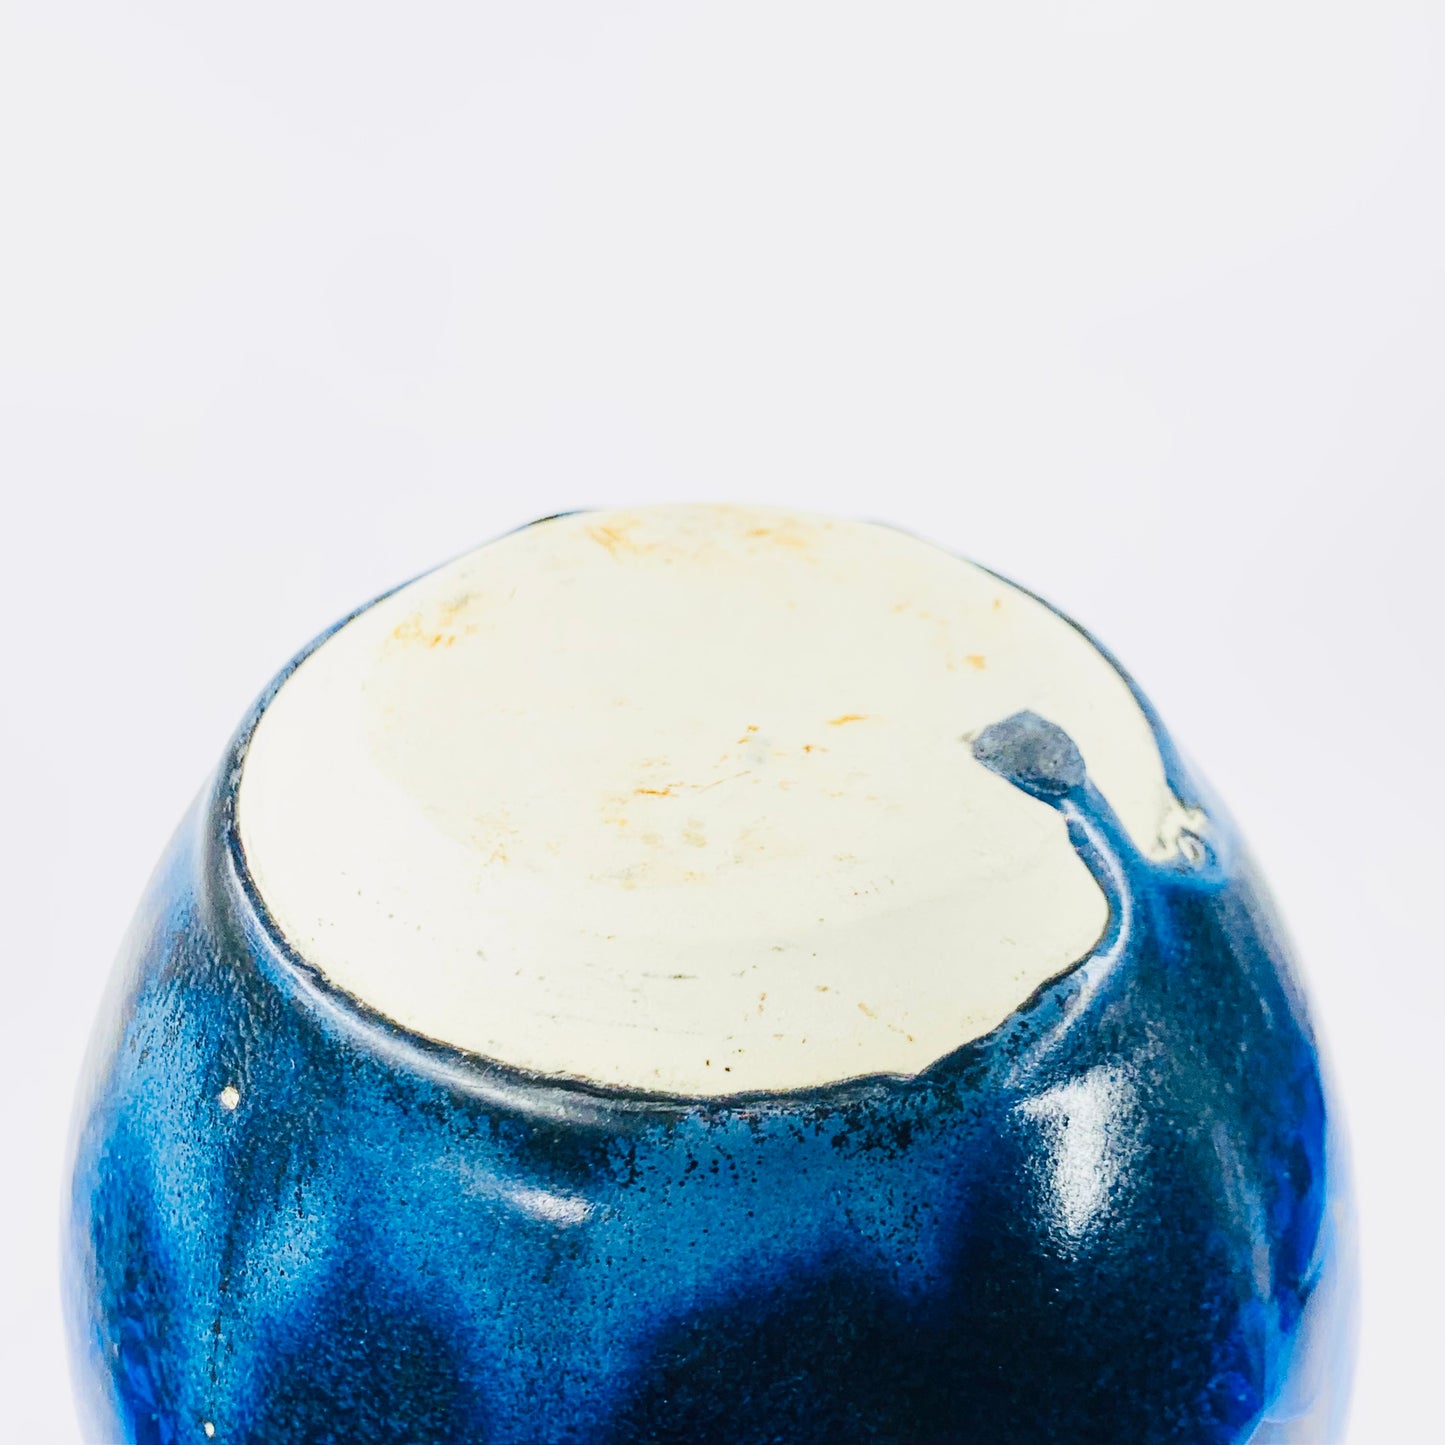 Retro hand made Australian cobalt blue gradient crystalline pottery bottle vase